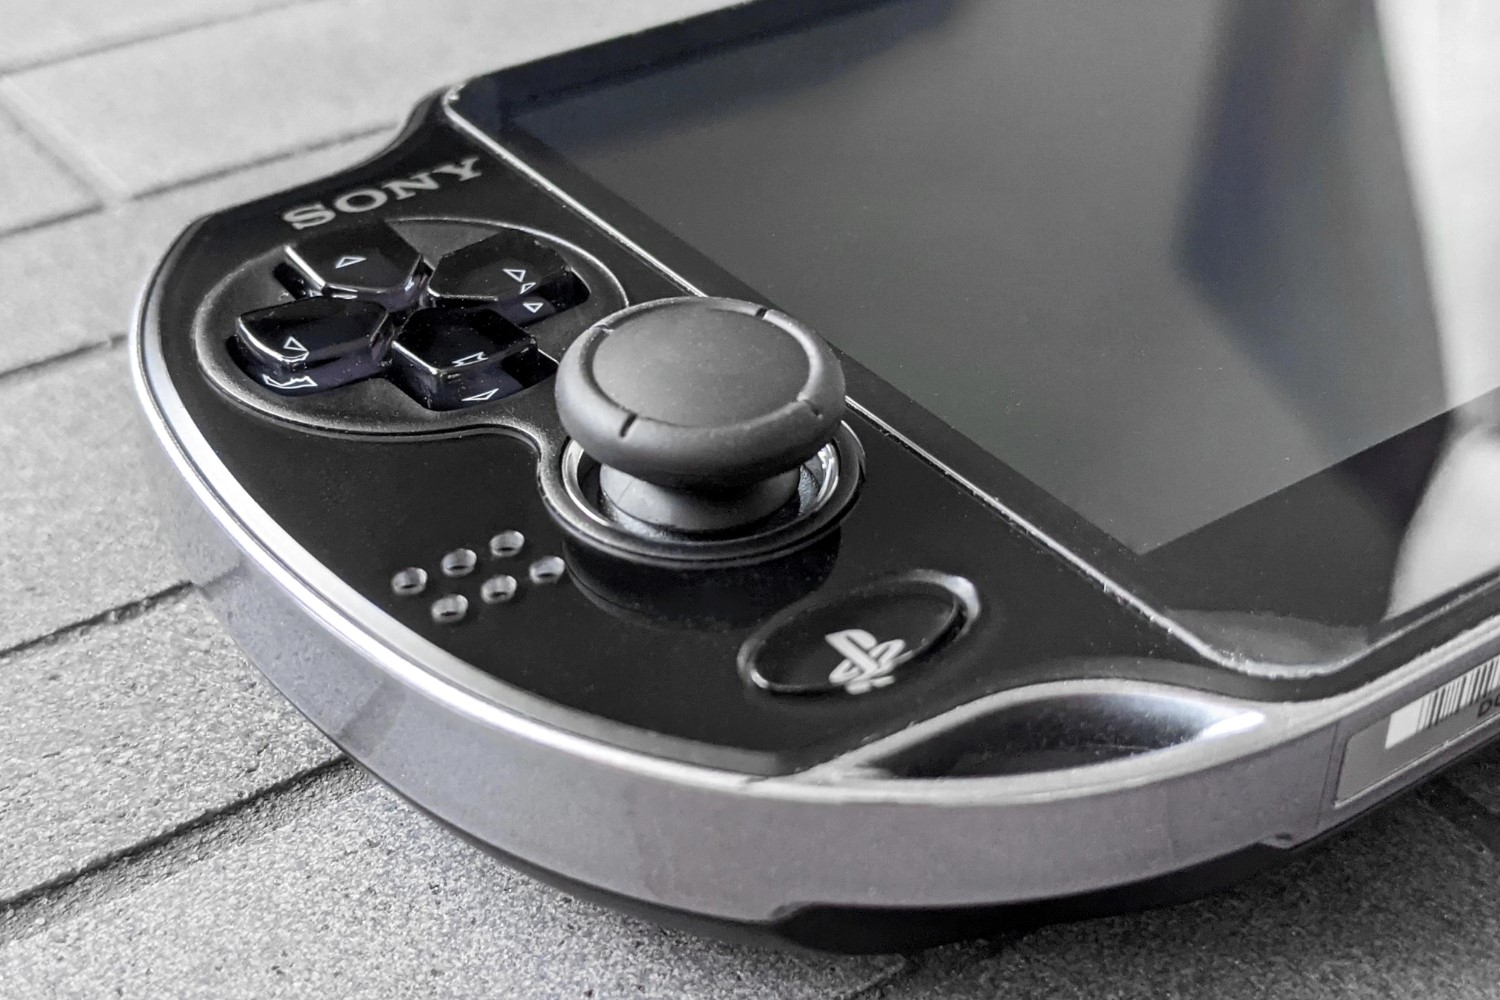 PS Vita Joystick Replacement: A DIY Tutorial